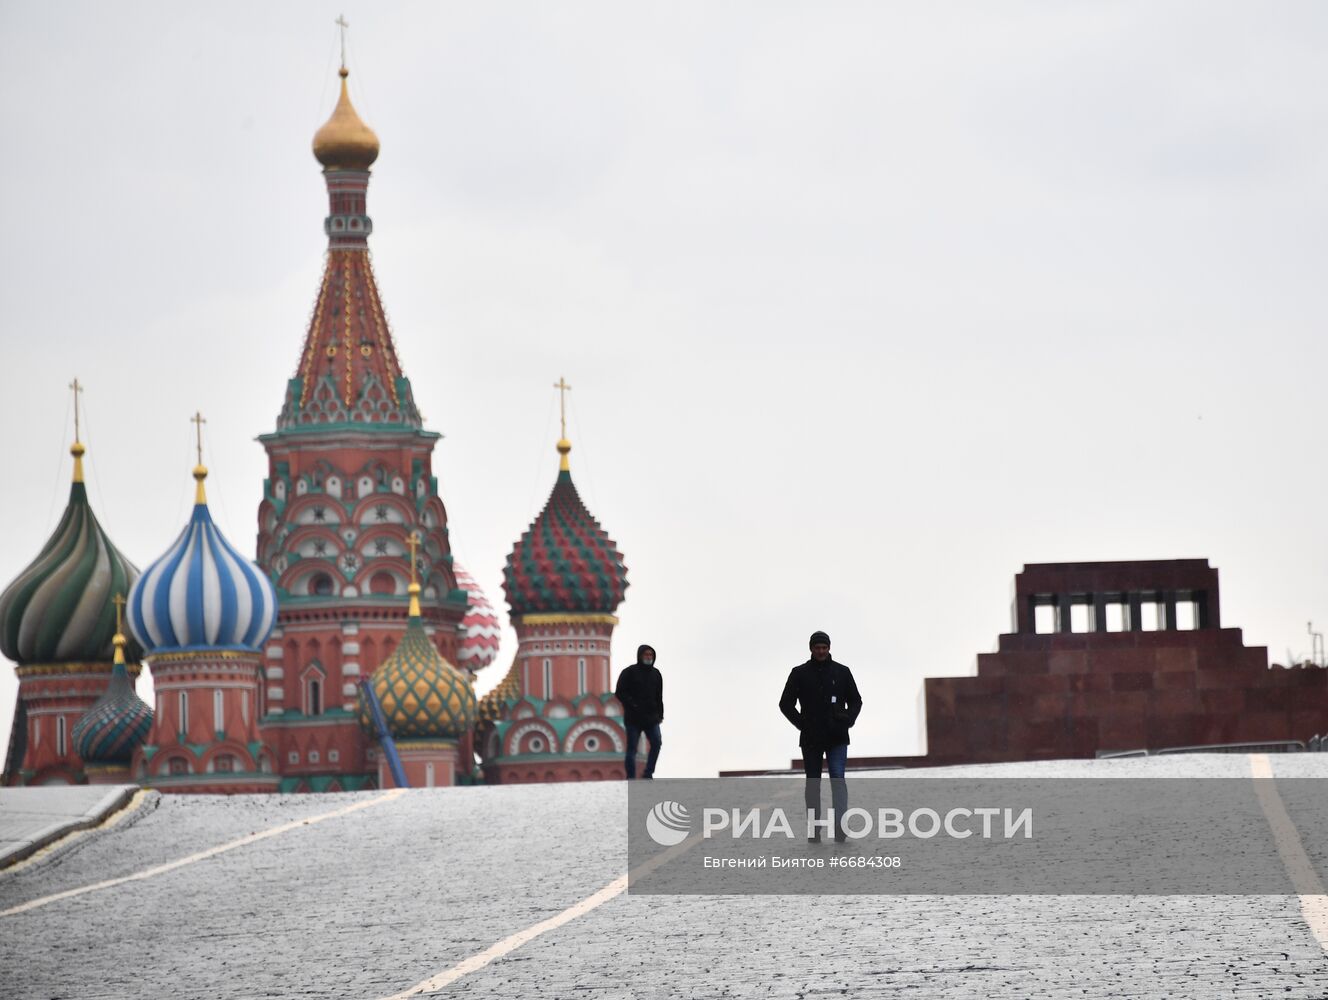 Покровский собор (храм Василия Блаженного) и мавзолей В. И. Ленина на Красной площади в Москве